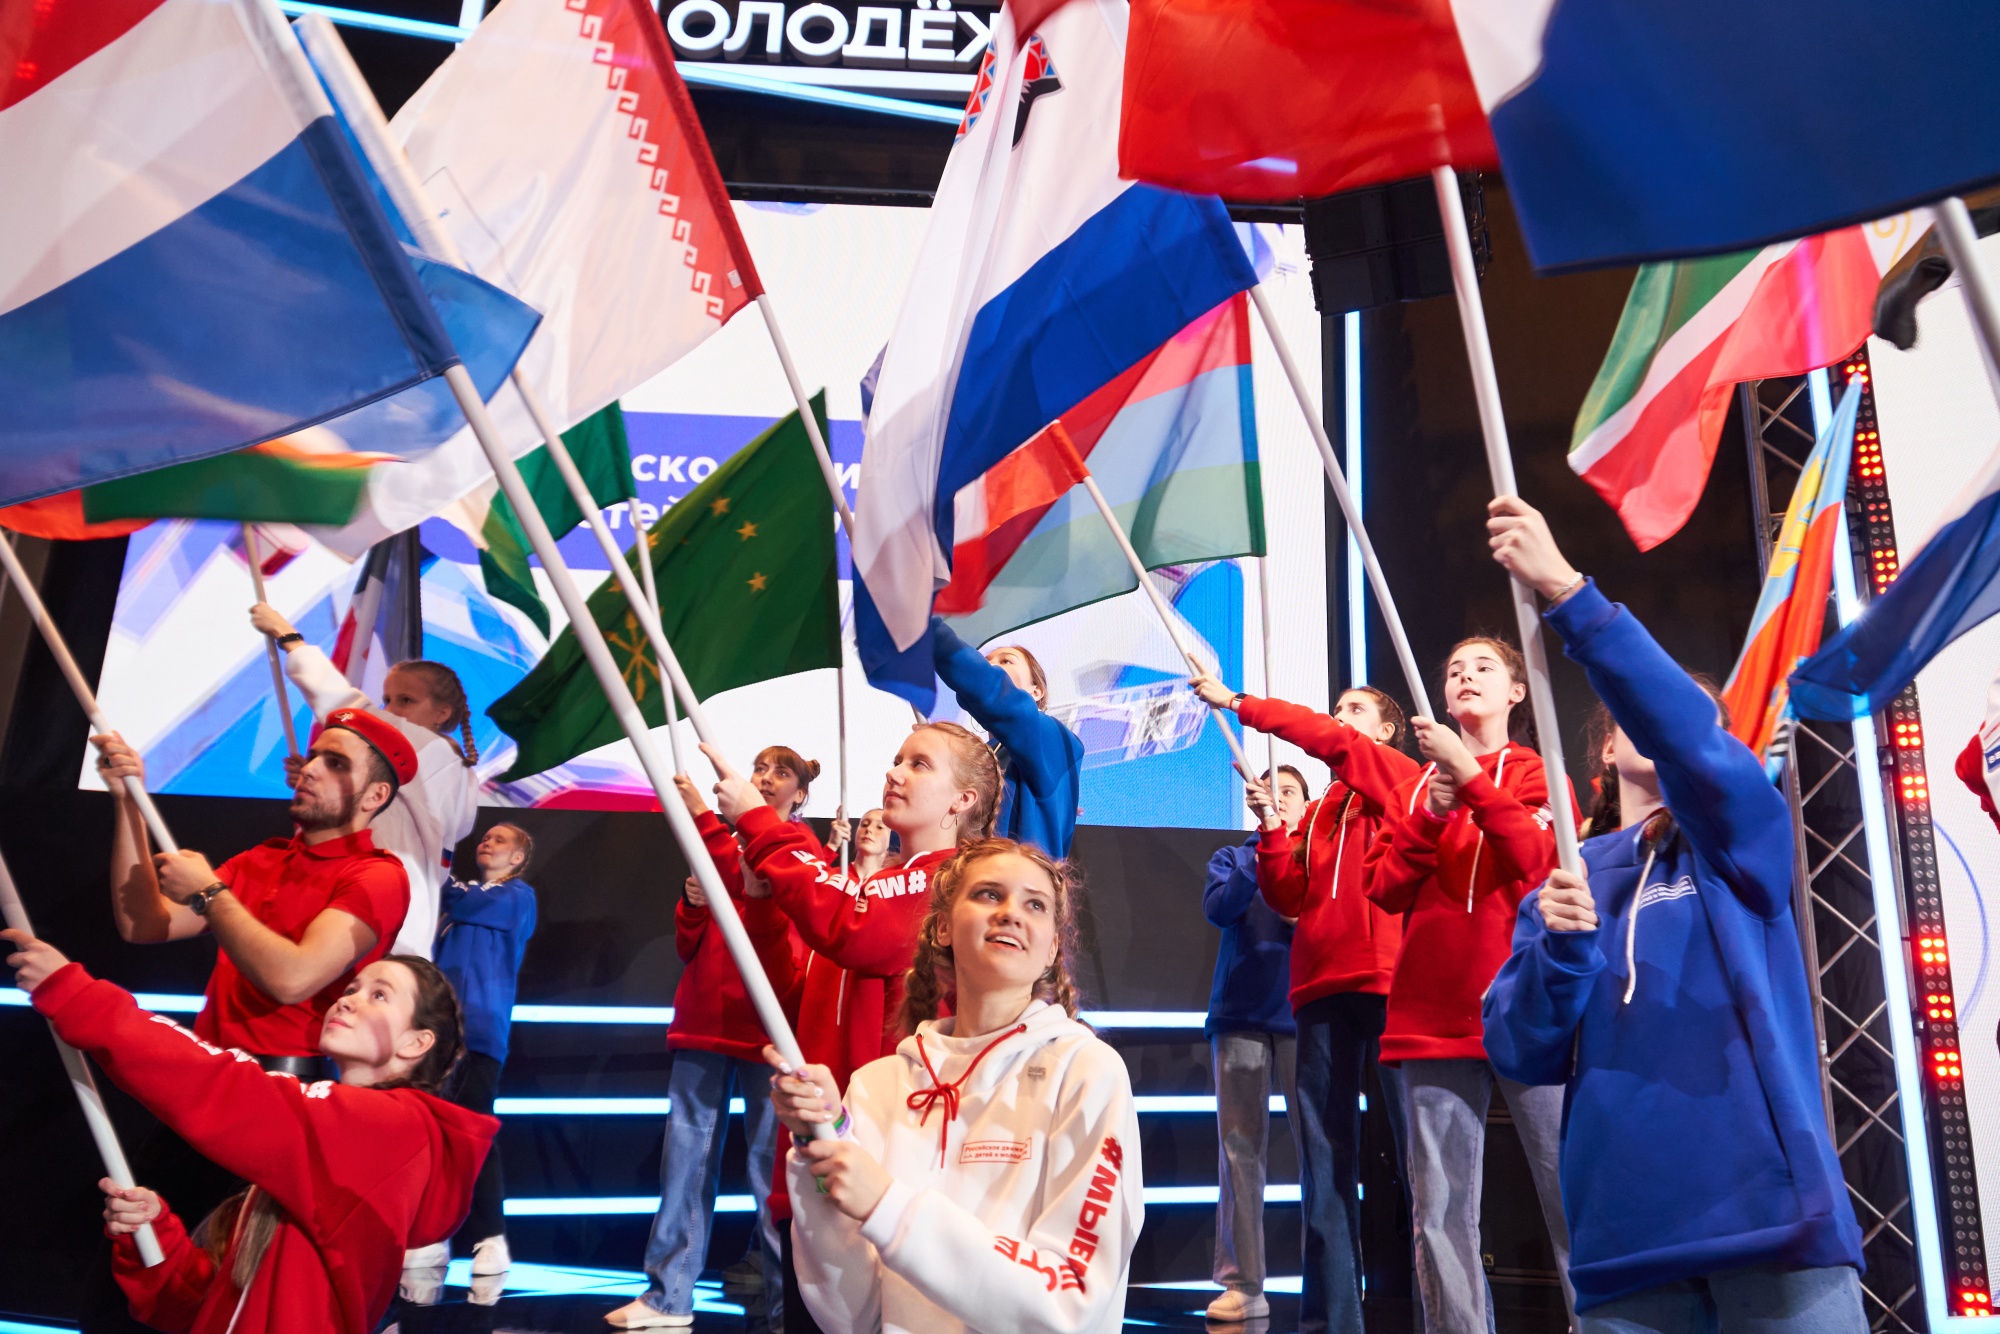 Будь в движении первый рф. Активная молодежь. Молодежные организации. Российские дети. Молодежь с флагом России.